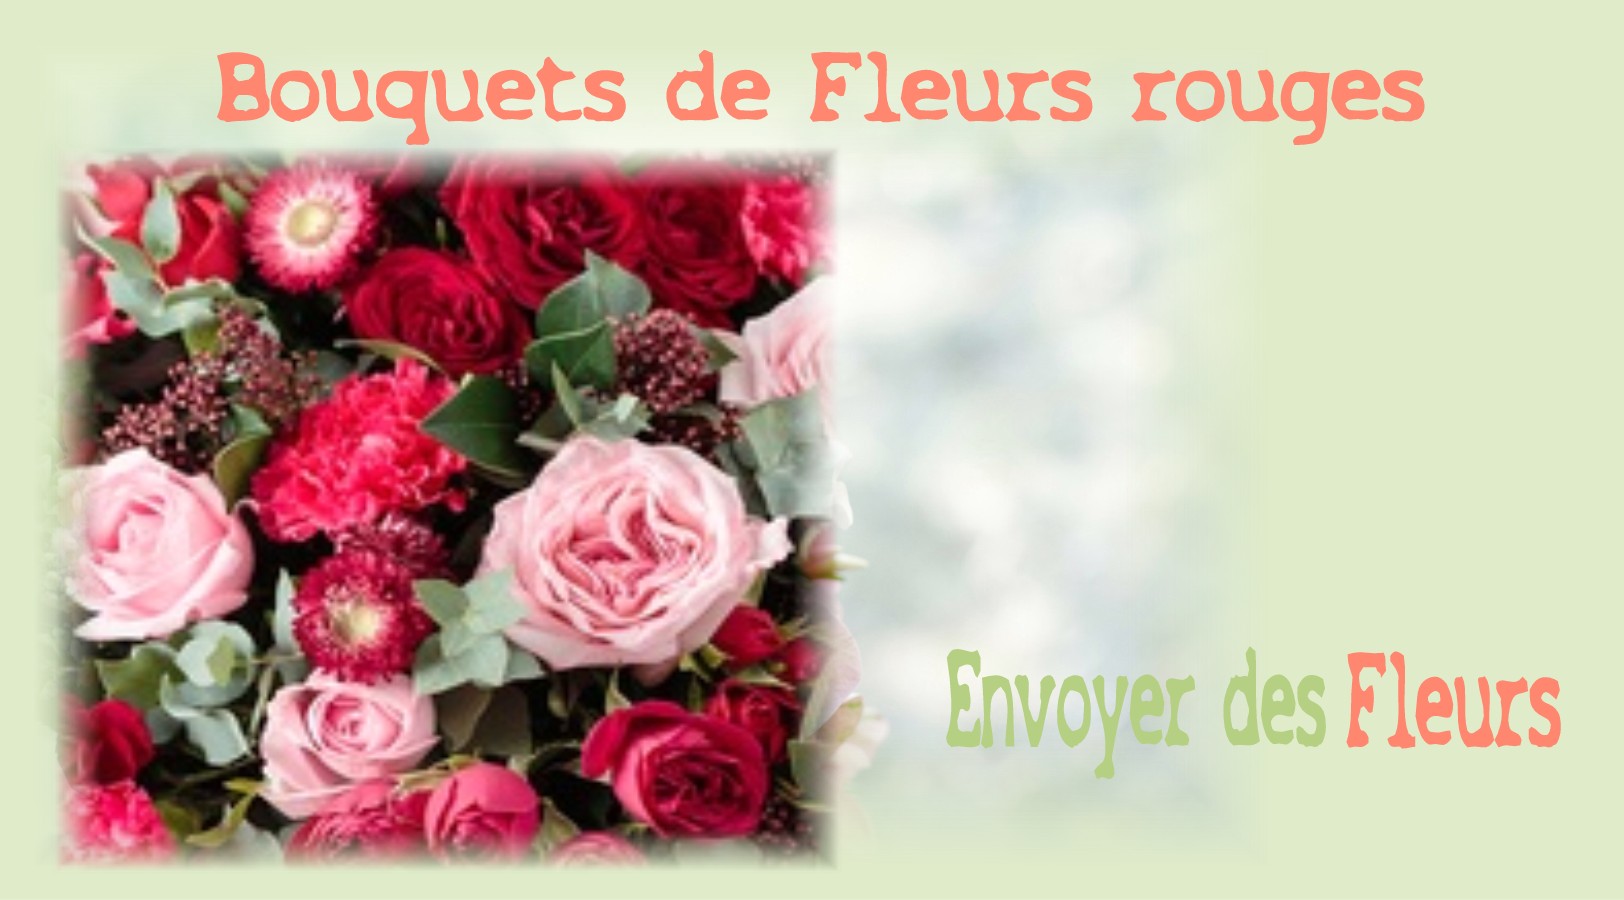 BOUQUETS DE FLEURS ROUGES - FLEURISTE NANTES (44) - ENVOYER DES FLEURS